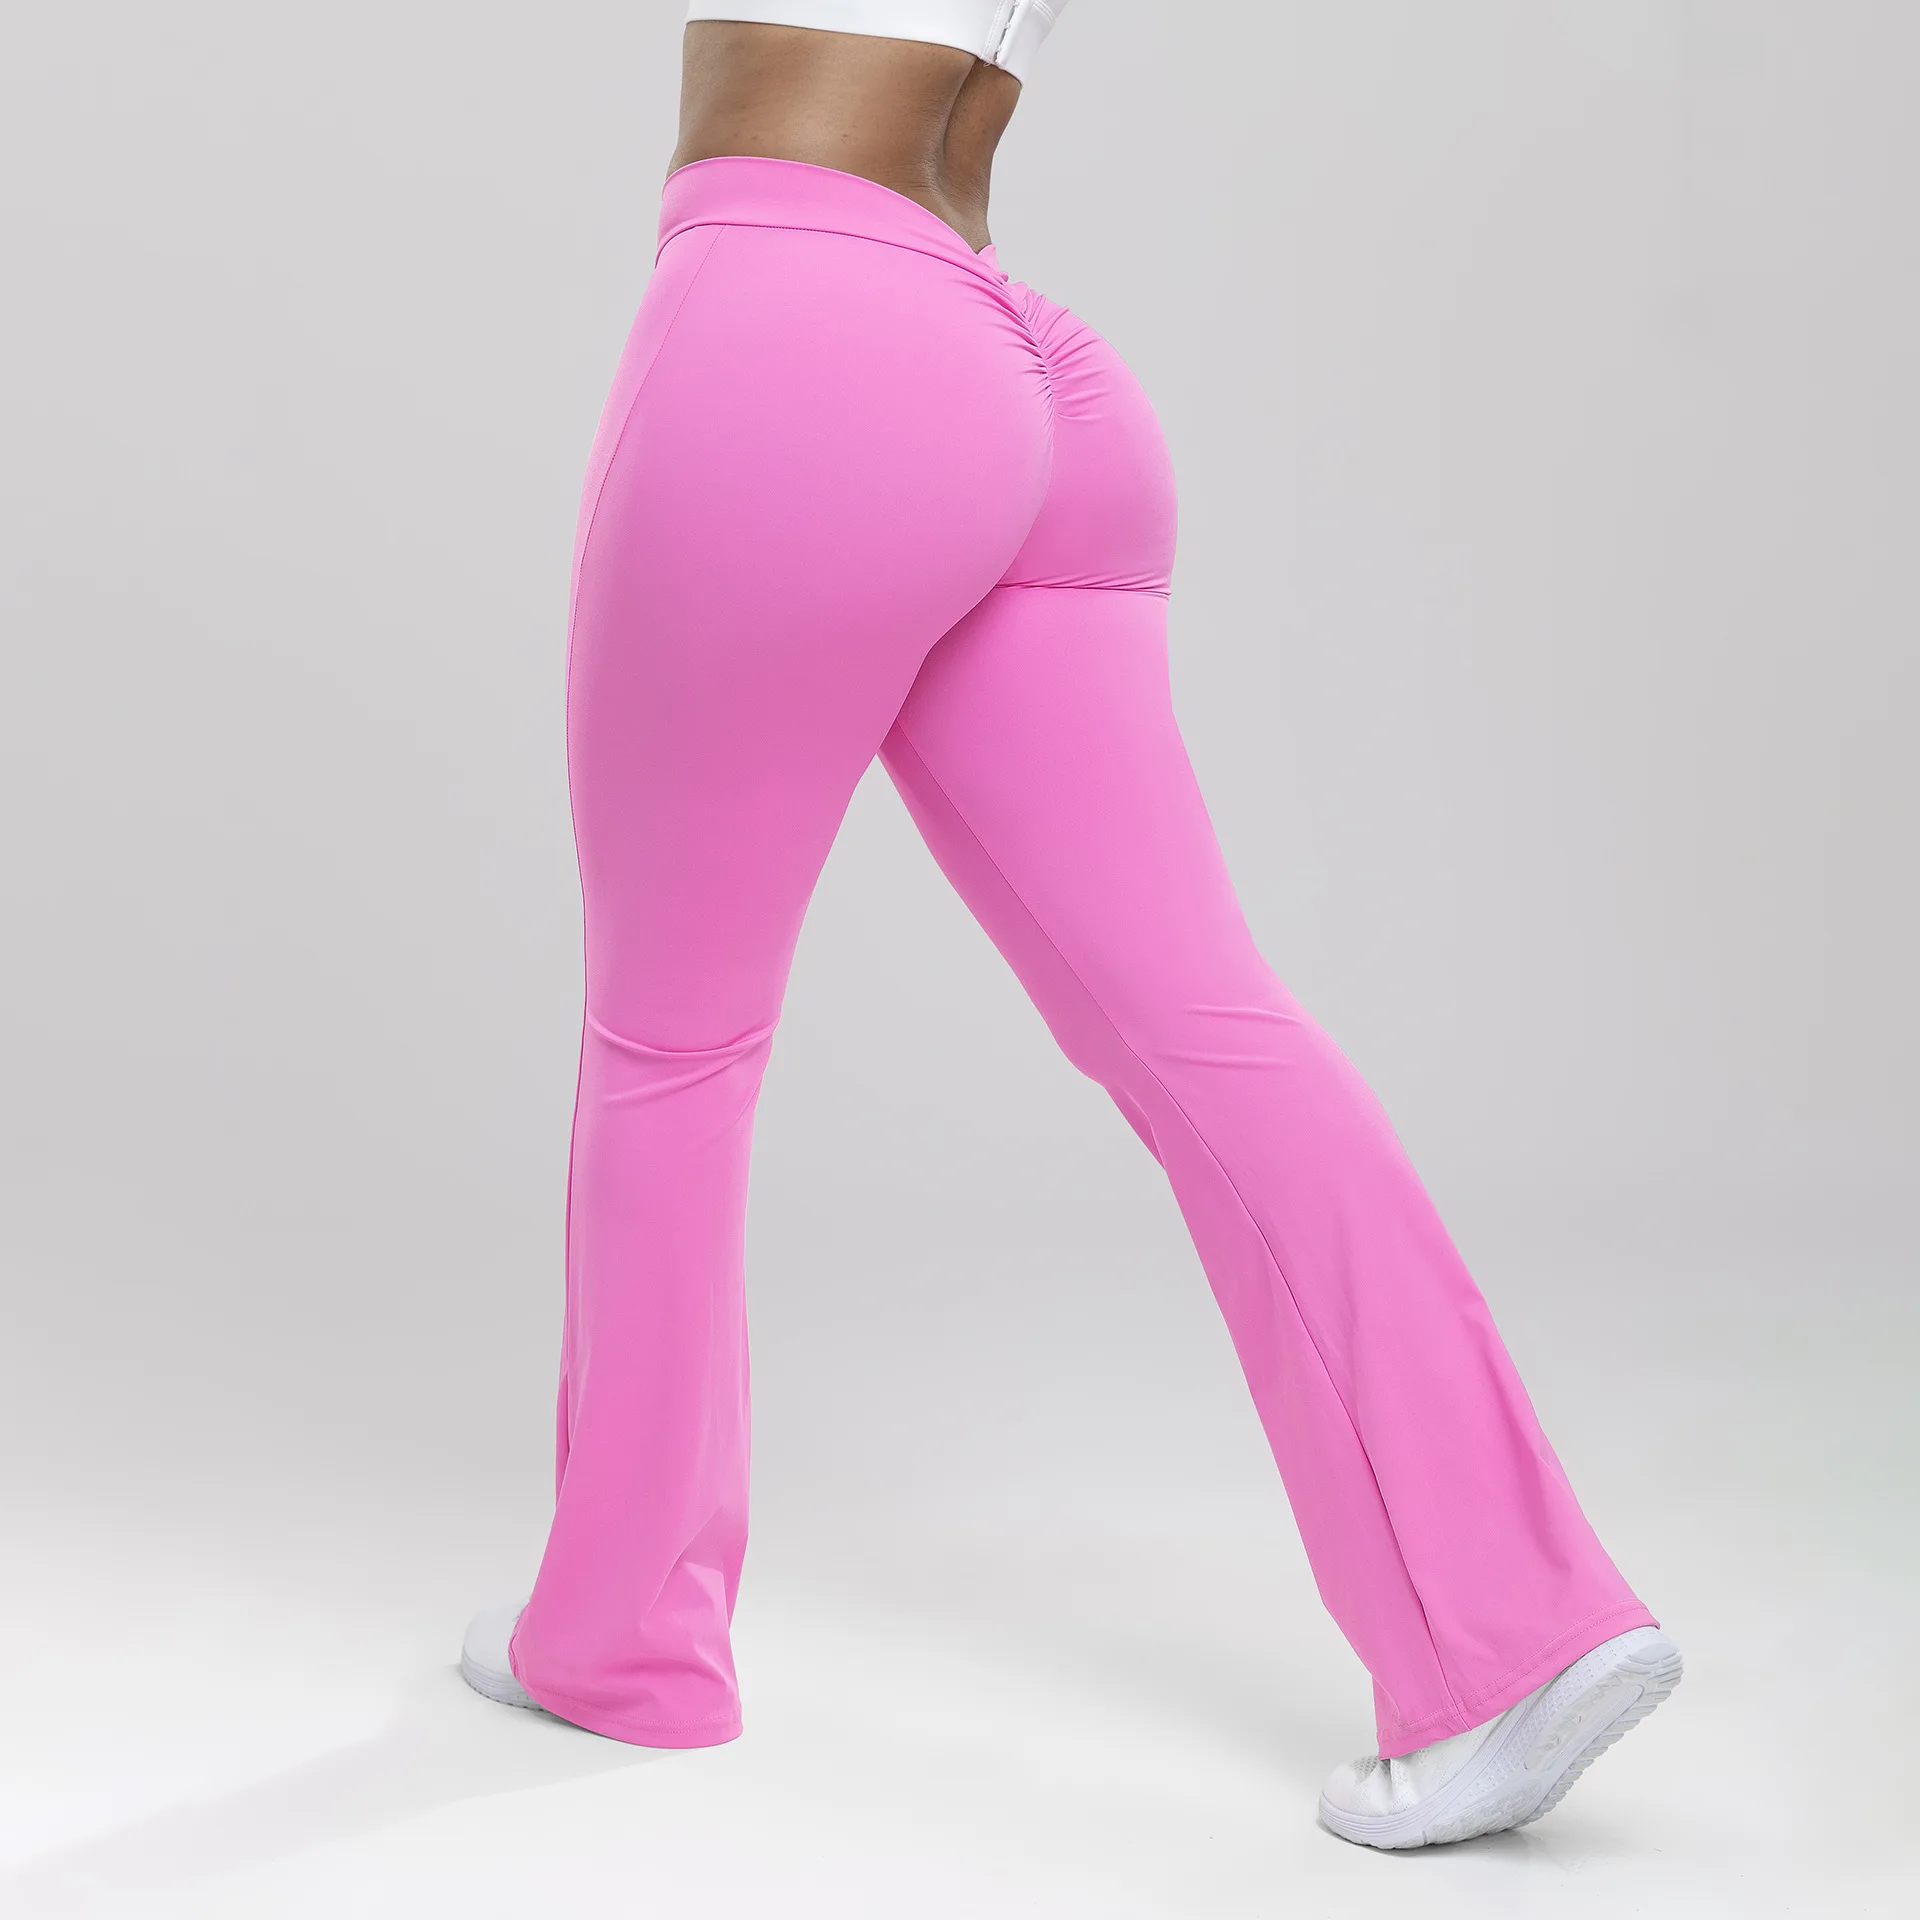 

Штаны для йоги, расклешенные штаны с заниженной талией, тренировочные штаны для бега, расклешенные штаны с эффектом пуш-ап, спортивные Леггинсы для фитнеса, женские штаны для спортзала